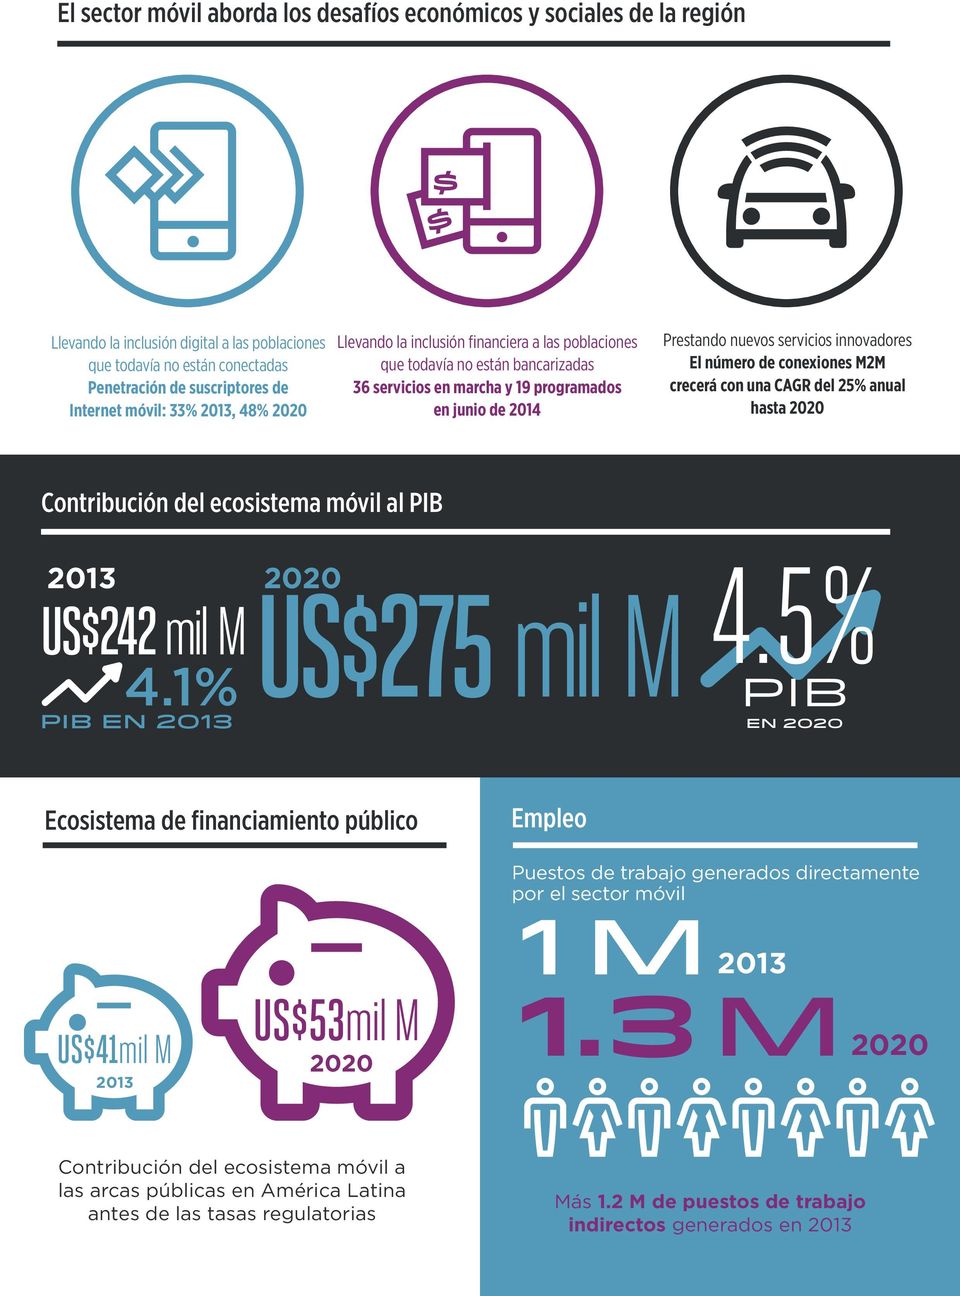 El número de conexiones M2M crecerá con una CAGR del 25% anual hasta 2020 Contribución del ecosistema móvil al PIB 2013 2020 US$242 mil M US$275 mil M 4.1% PIB en 2013 4.